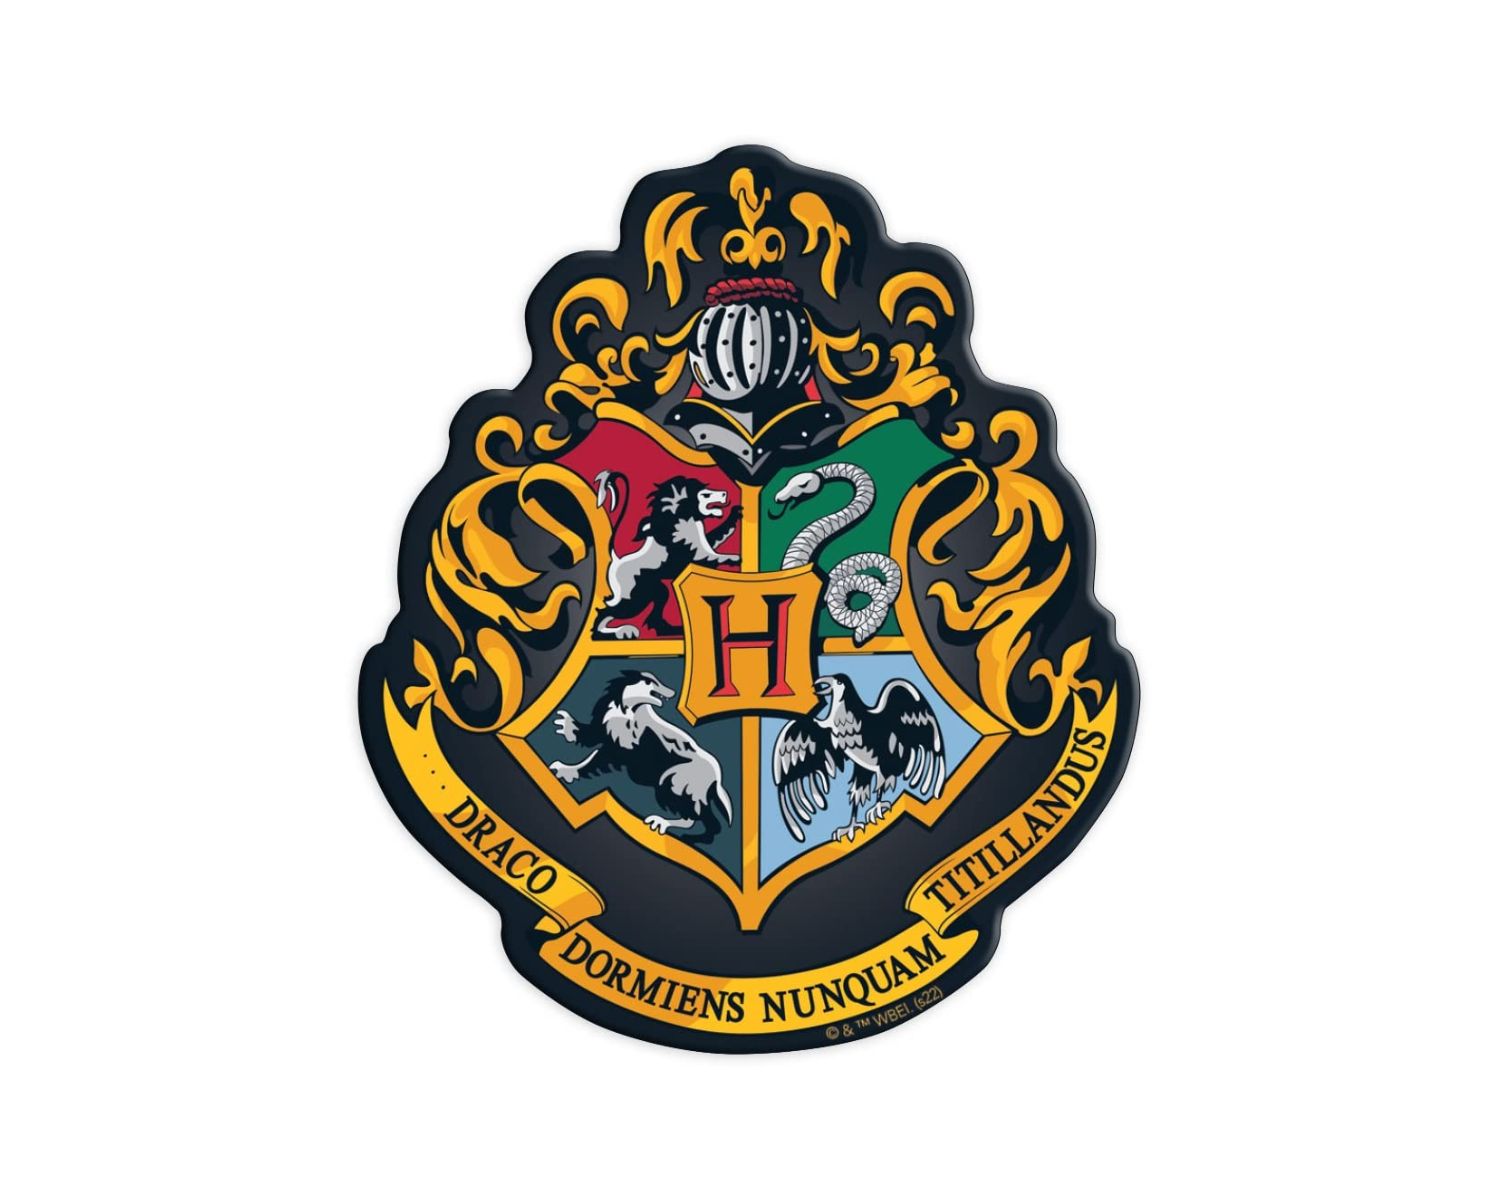 OFFICIEL HARRY POTTER Hogwarts Maison Crest Drapeau Signets Noble